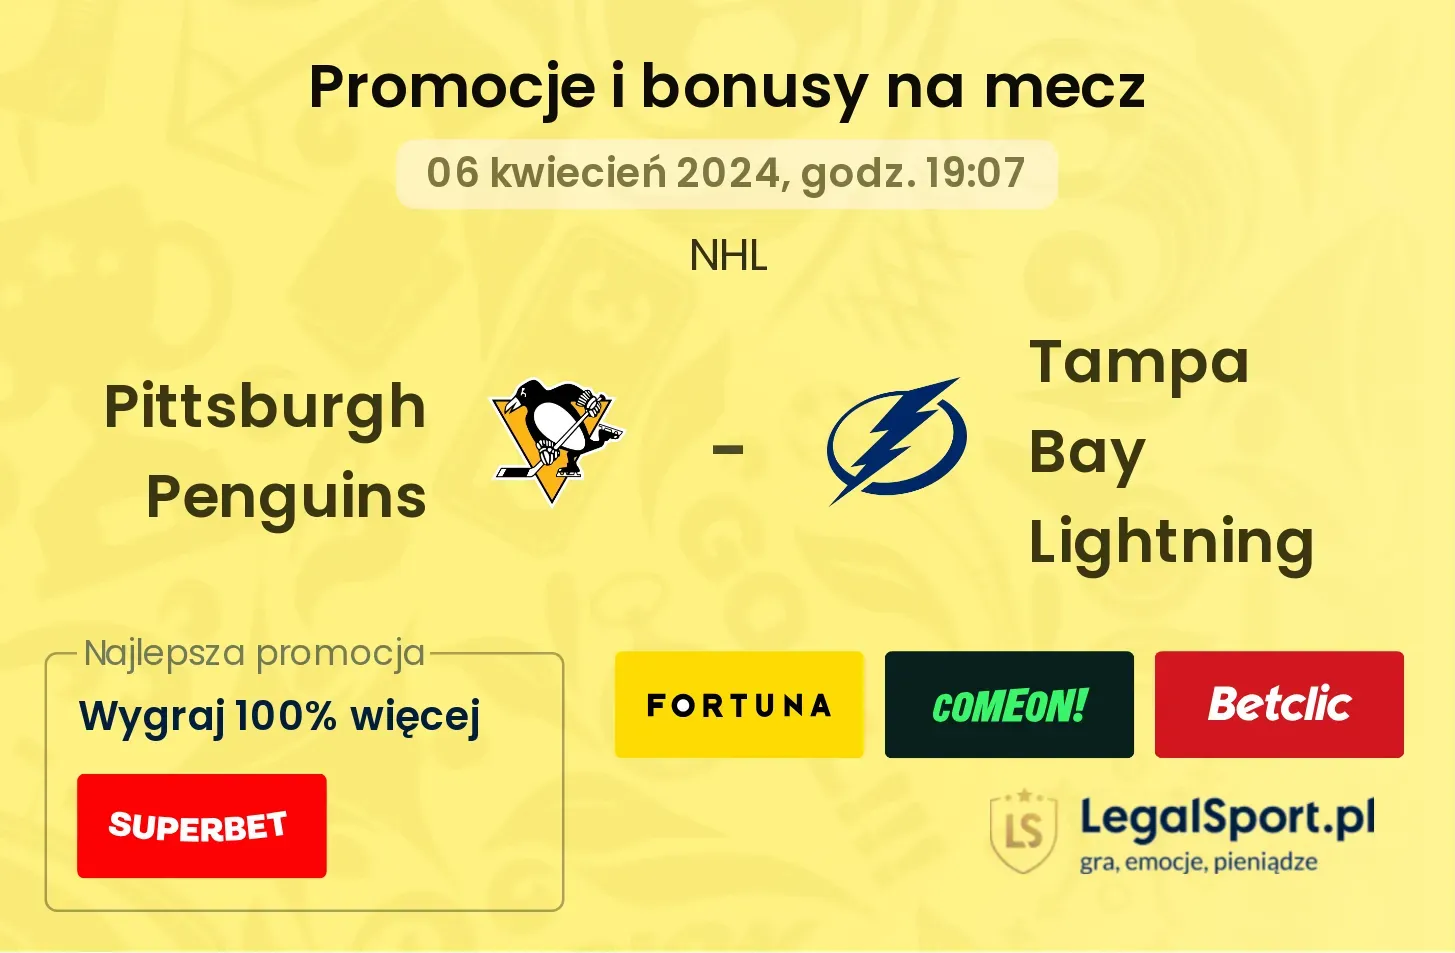 Pittsburgh Penguins - Tampa Bay Lightning promocje bonusy na mecz